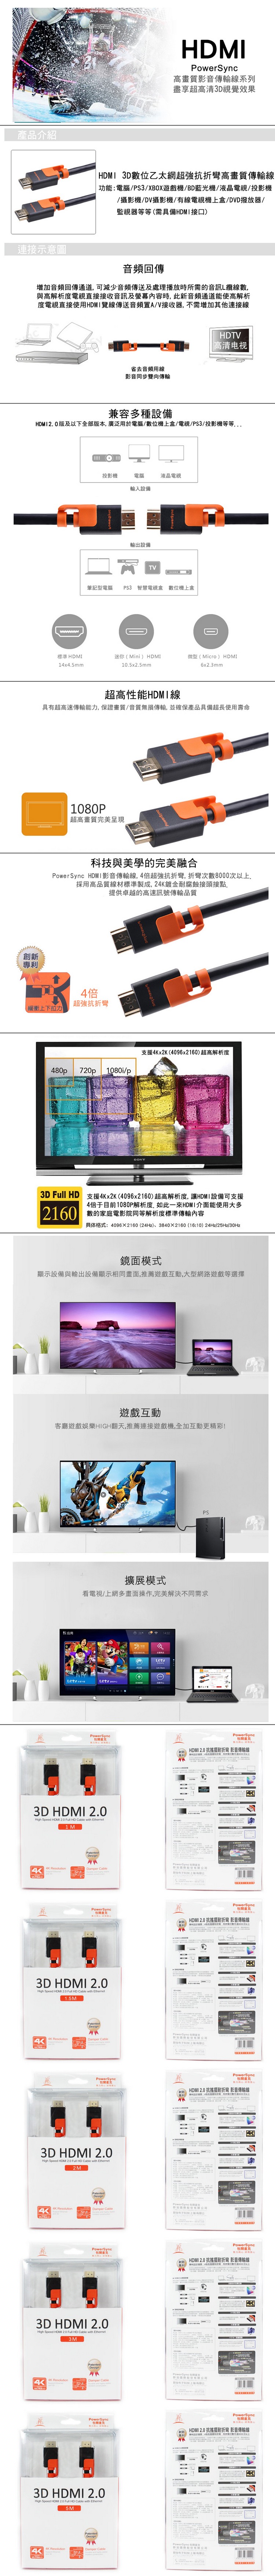 HDMI20-3D.jpg